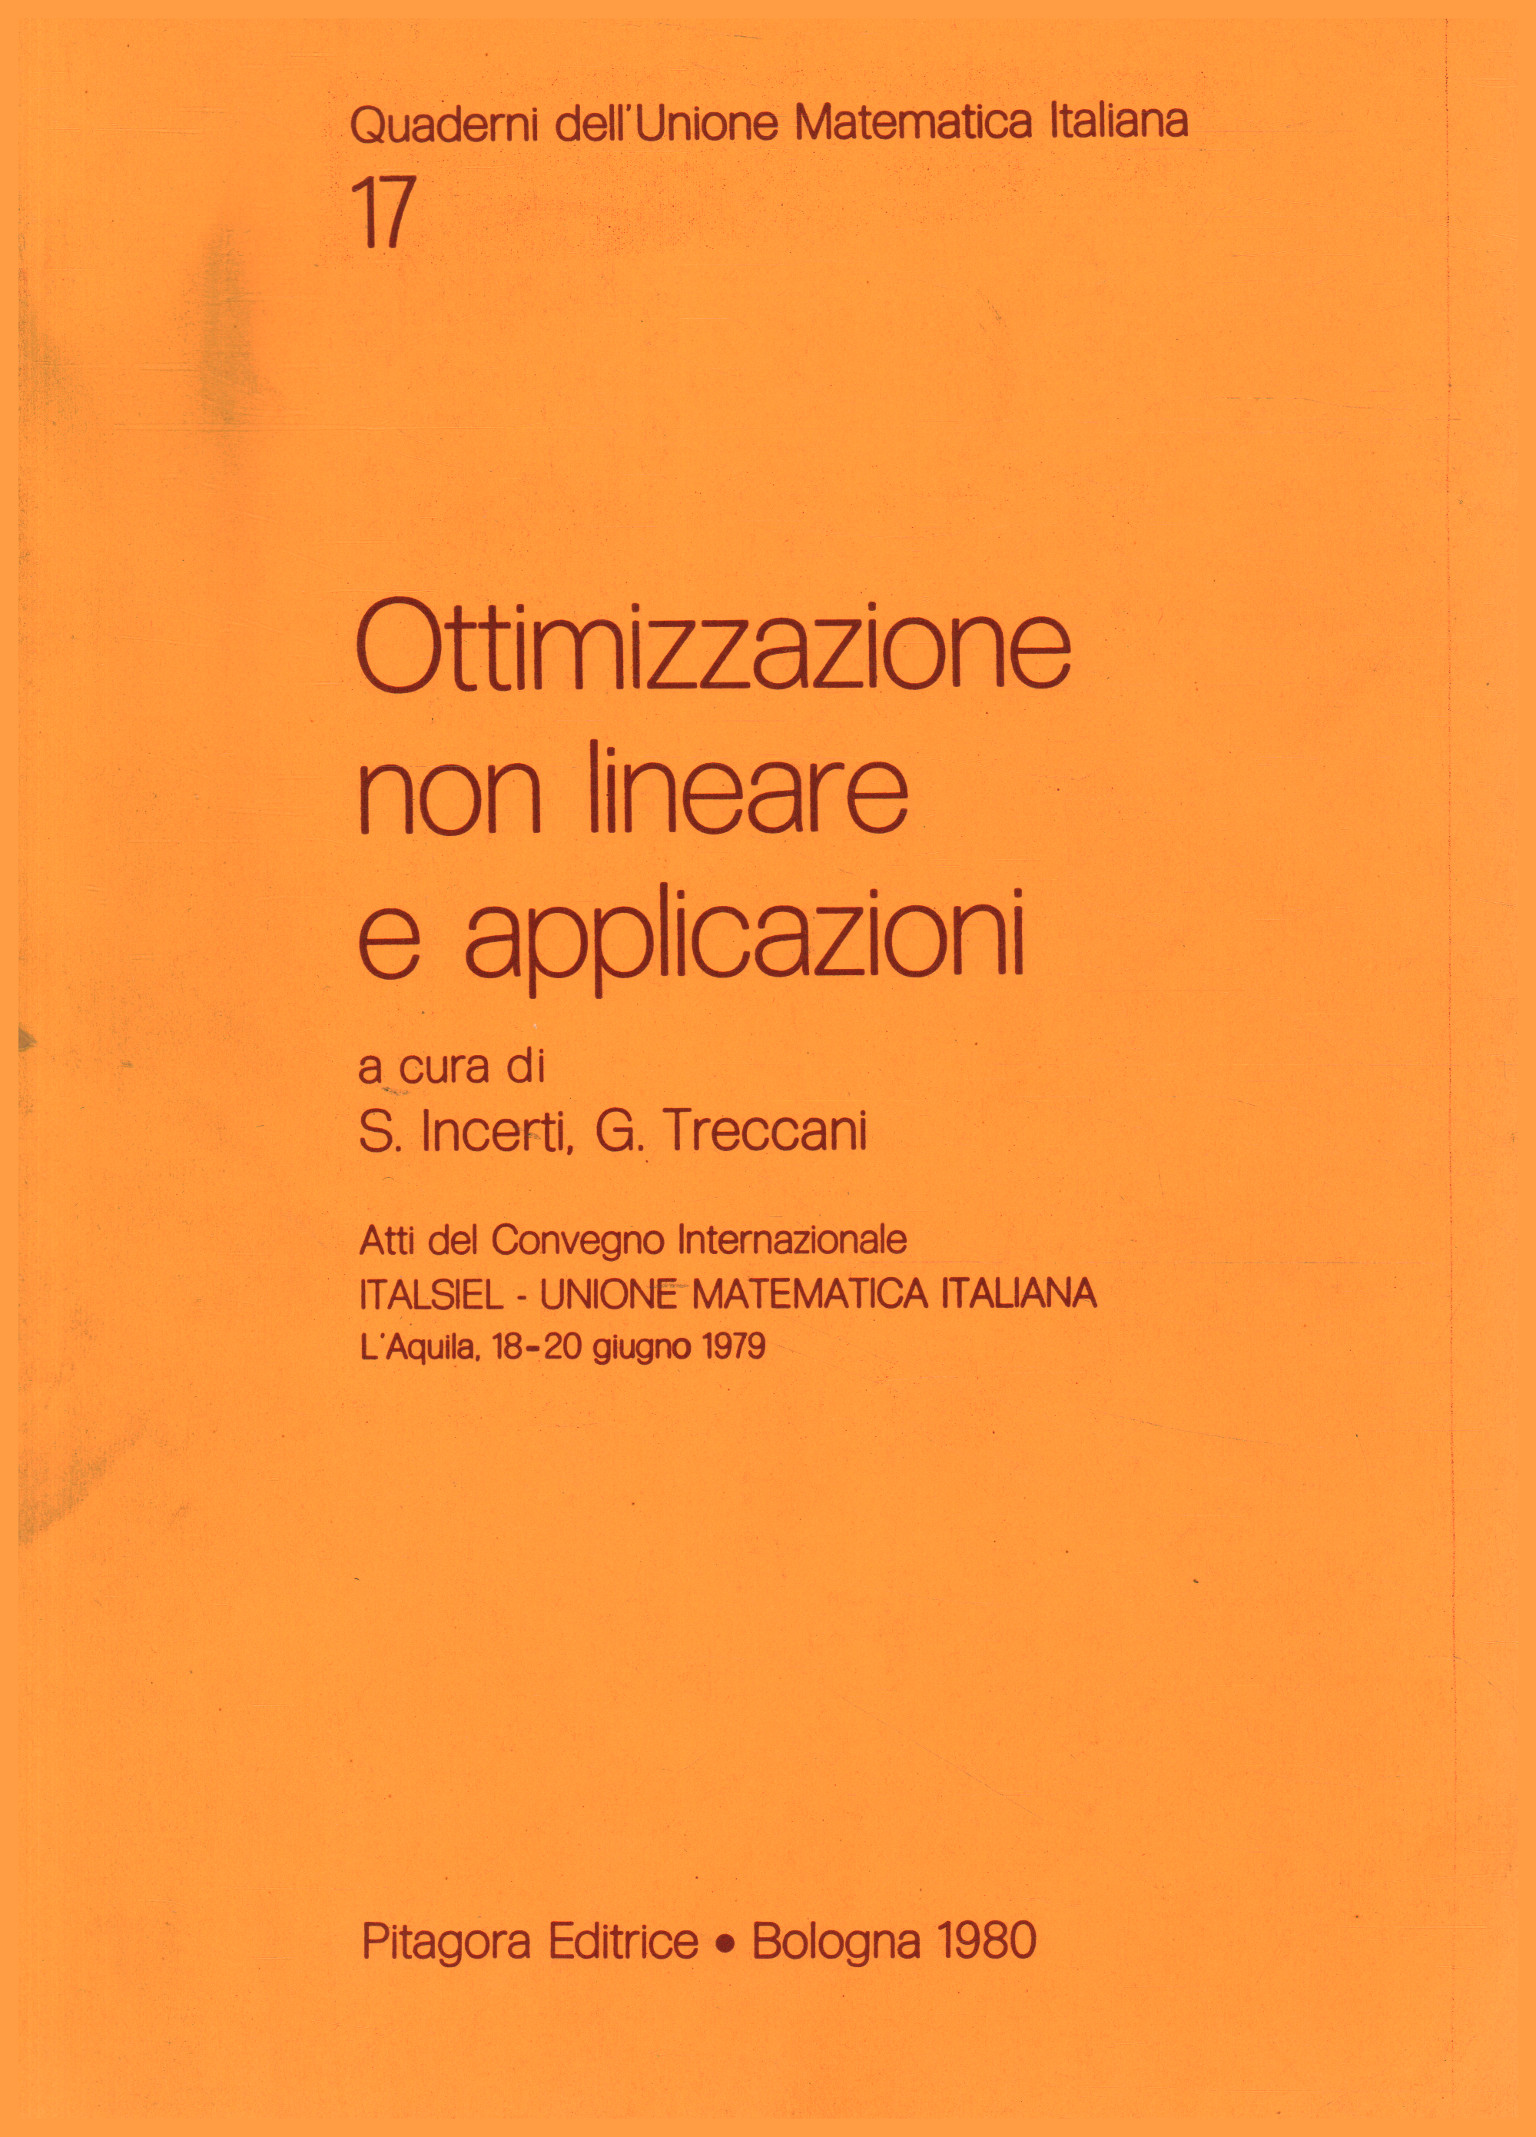 Nonlinear optimization and applications, S. Incerti G. Treccani